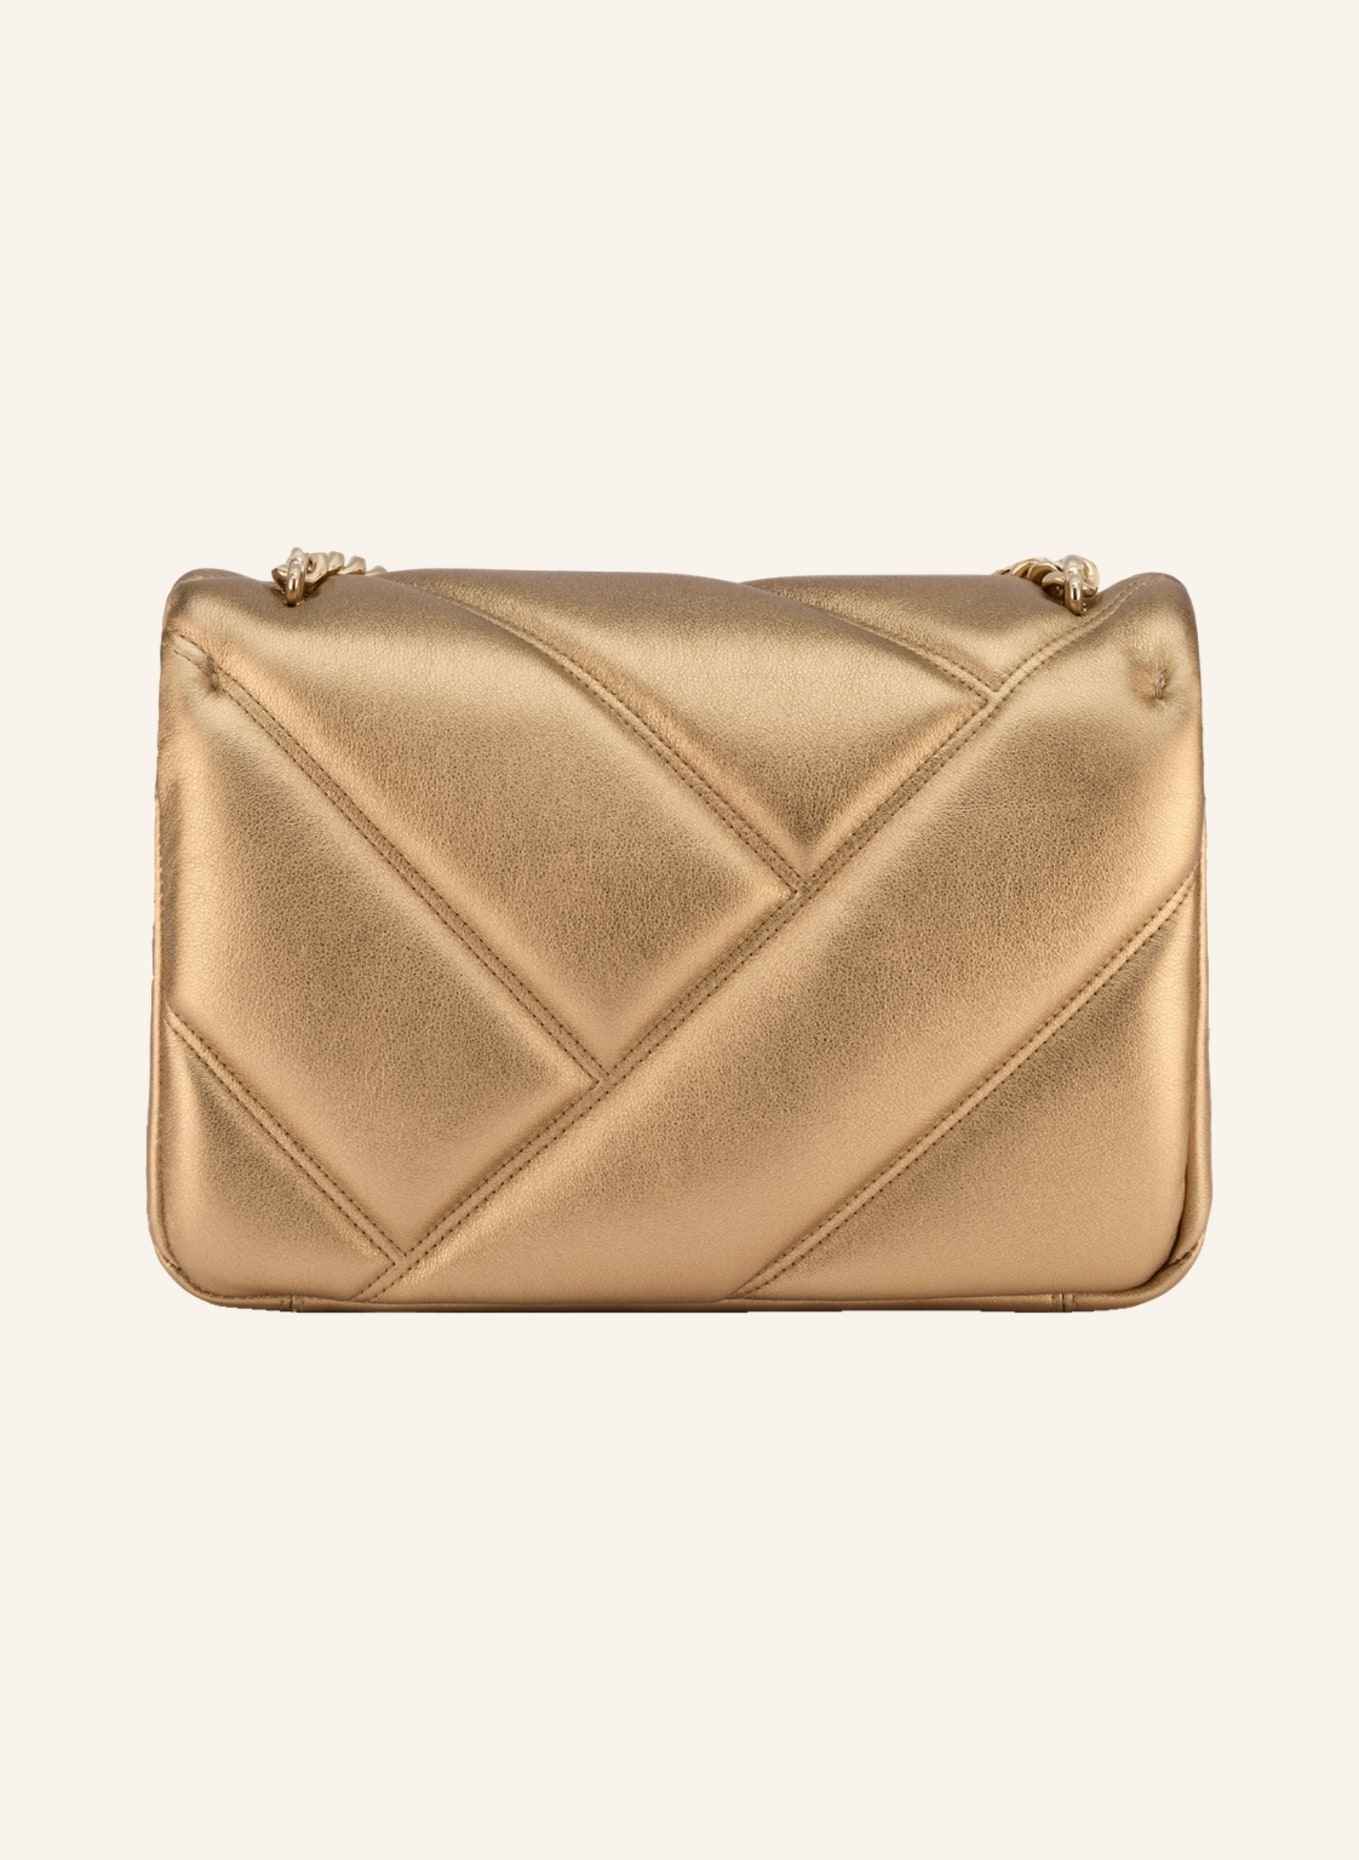 BVLGARI Handtasche SERPENTI CABOCHON, Farbe: GOLD (Bild 2)